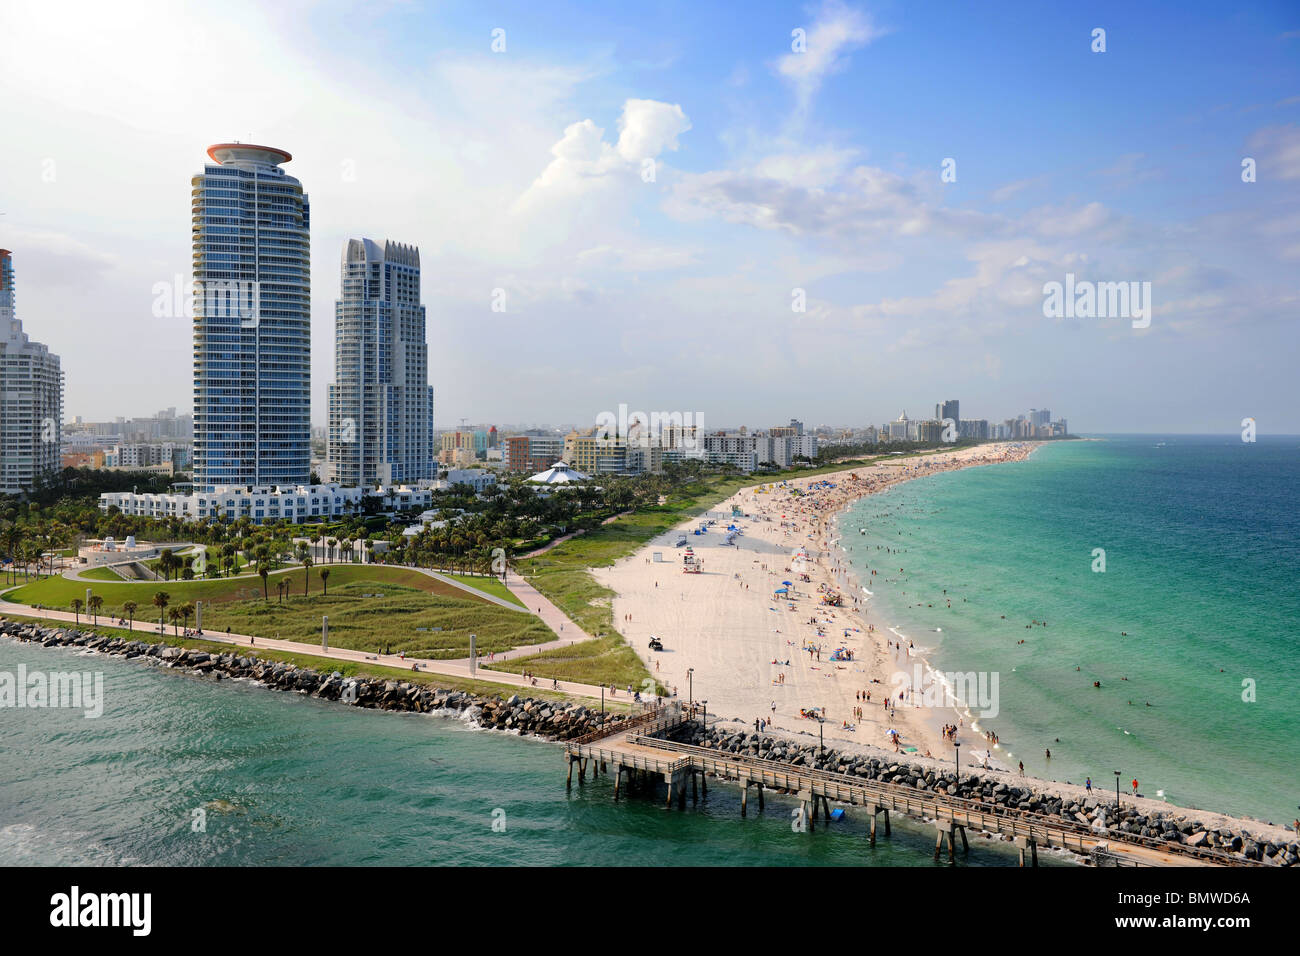 Vista aérea del sur de Miami Beach. Foto de stock